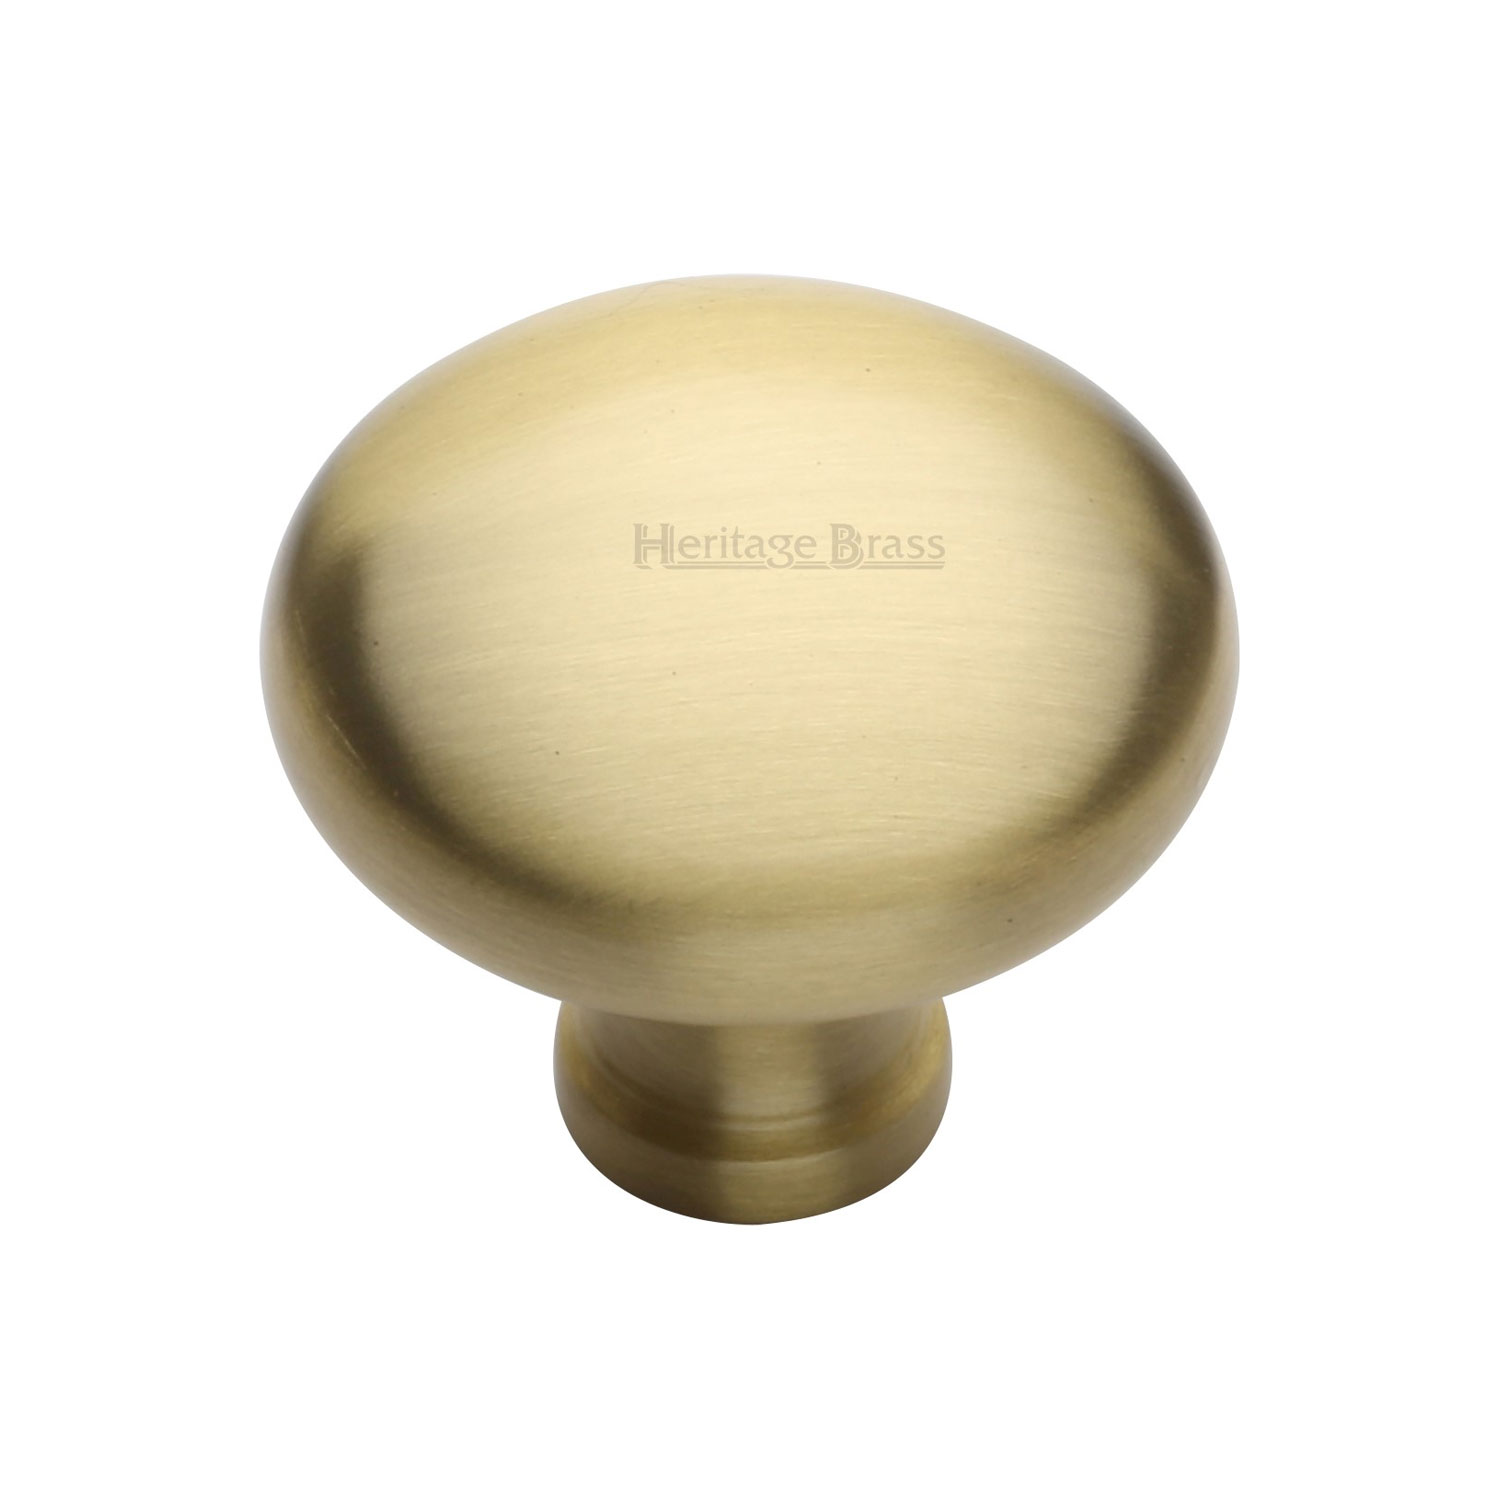 Heritage Brass Cabinet Knob Victorian Round Design 38mm